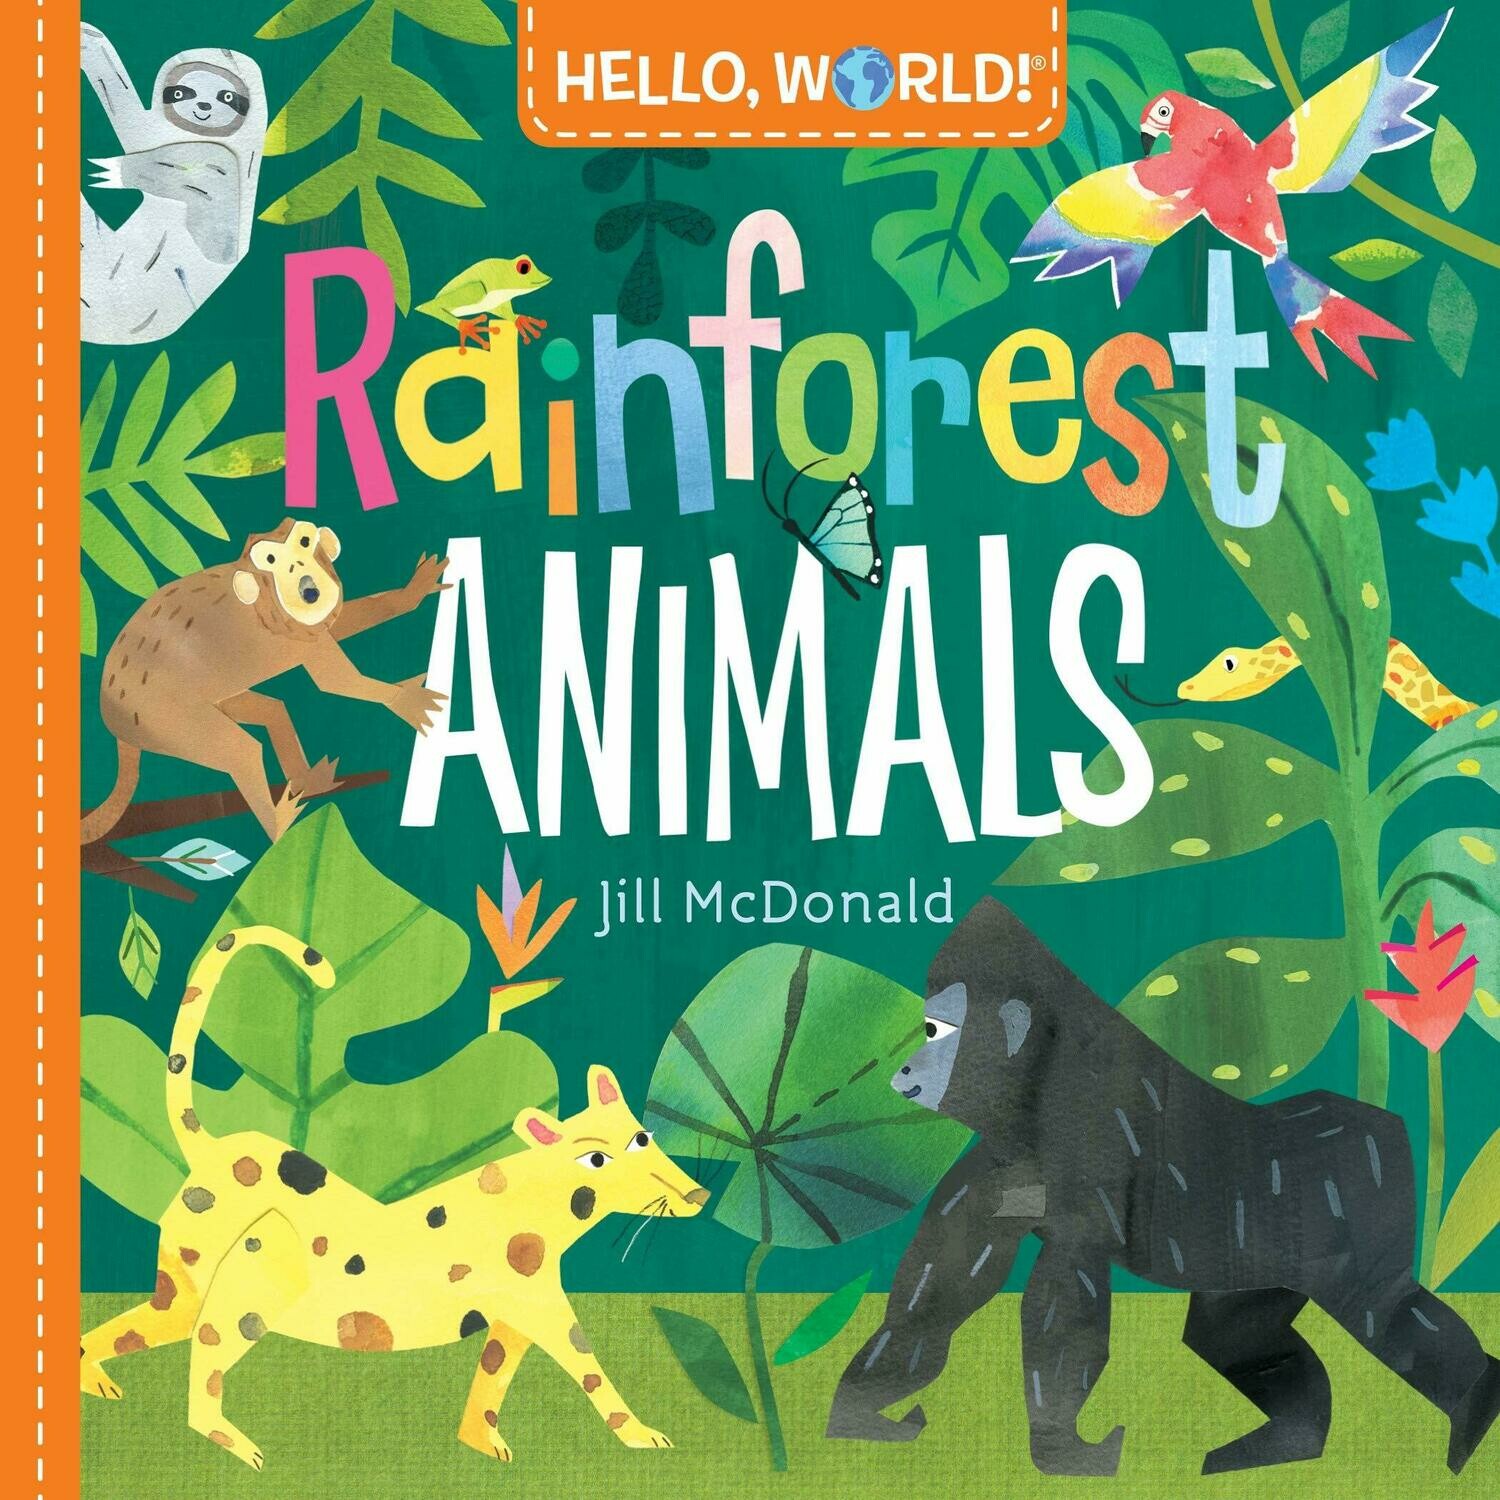 "Rainforest Animals" Book